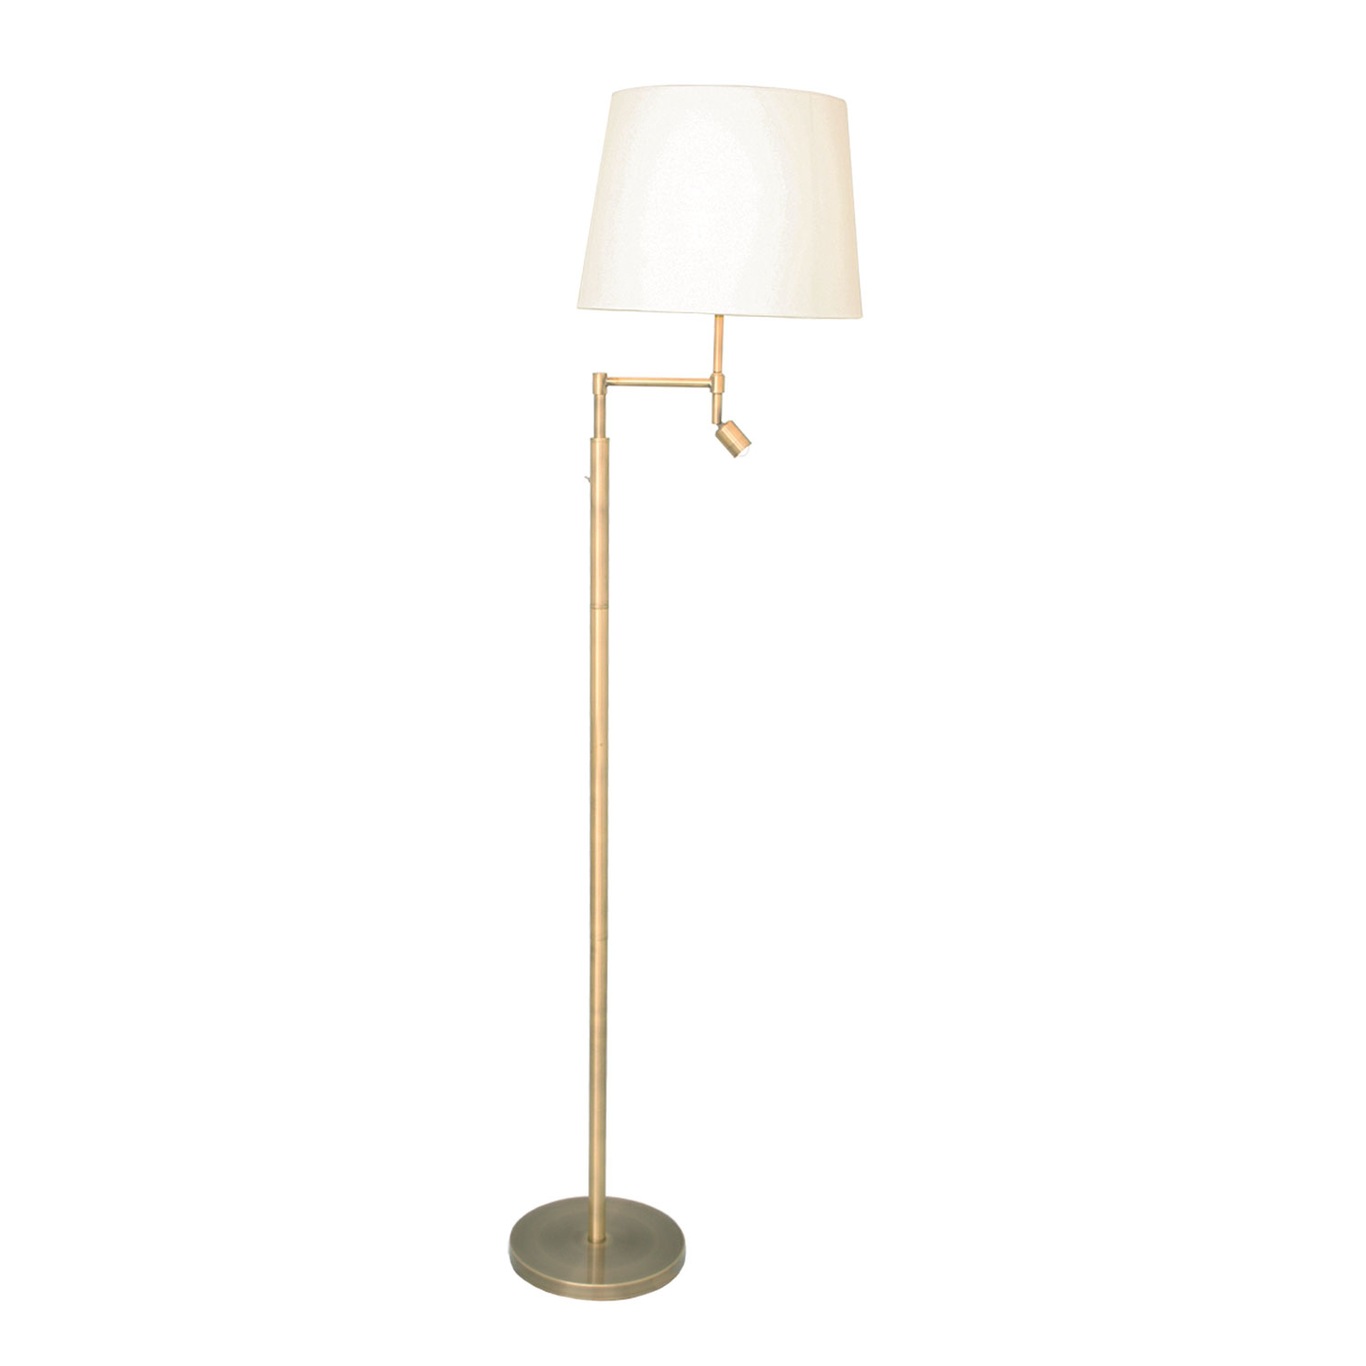 Orlando Floor Lamp, Antique/Beige